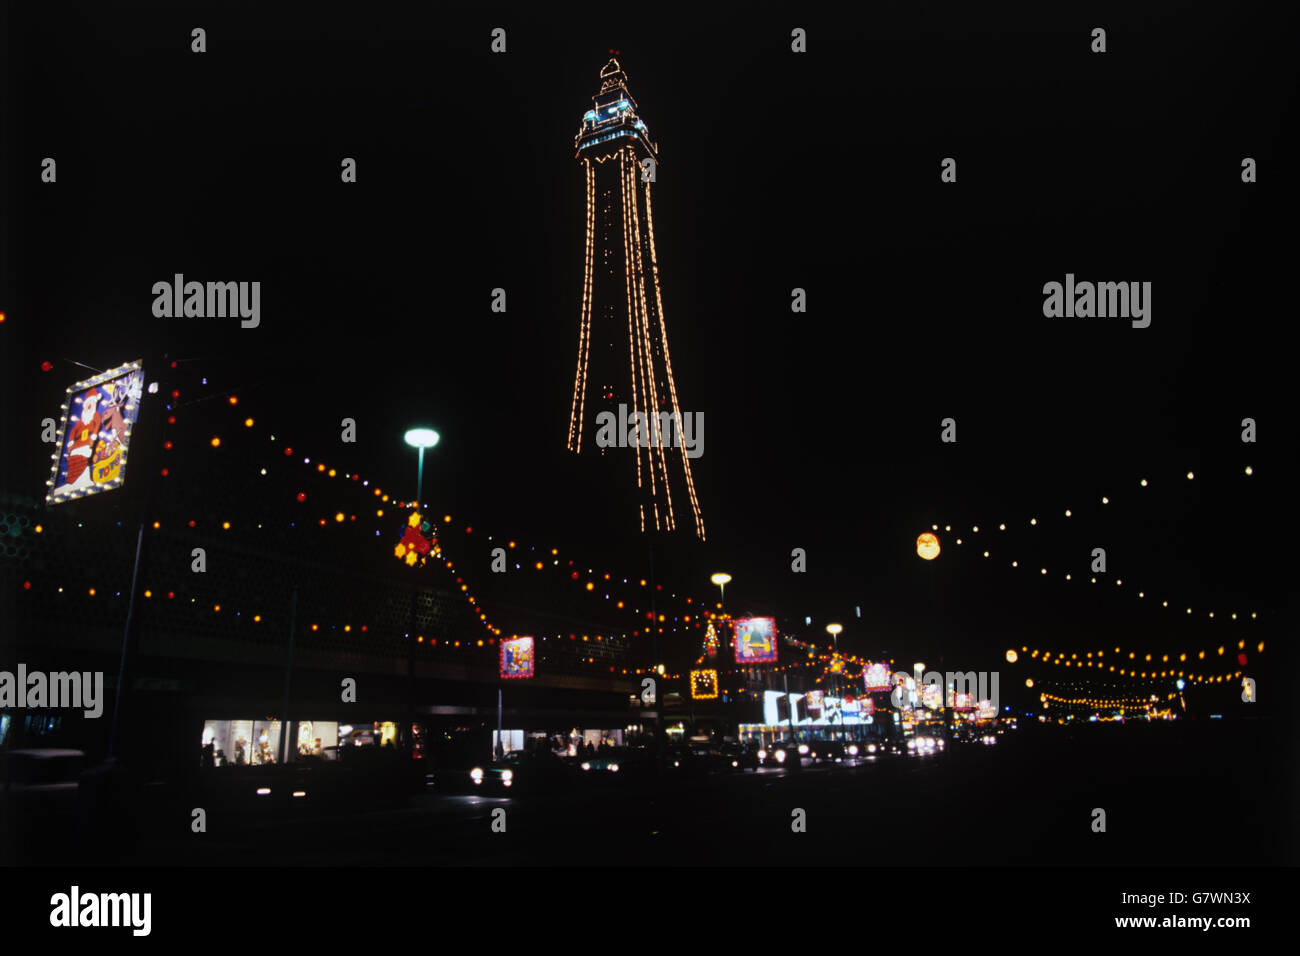 La tour Blackpool est illuminée pour faire le trait dominant des illuminations automnales de la station. Banque D'Images